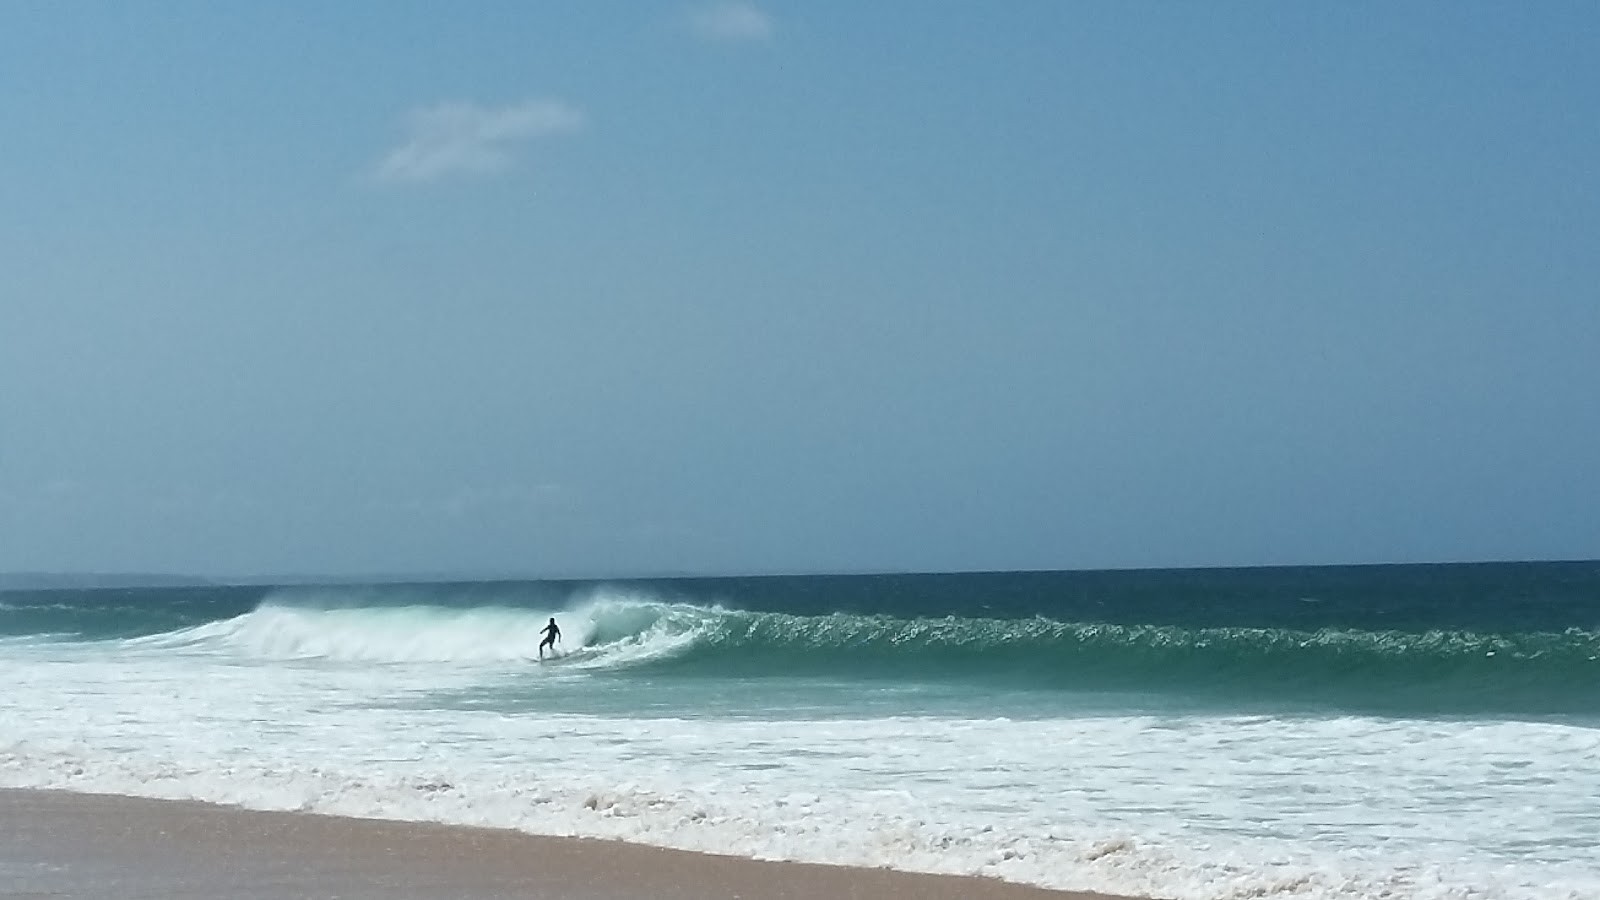 Foto af Praia da Consolacao - populært sted blandt afslapningskendere